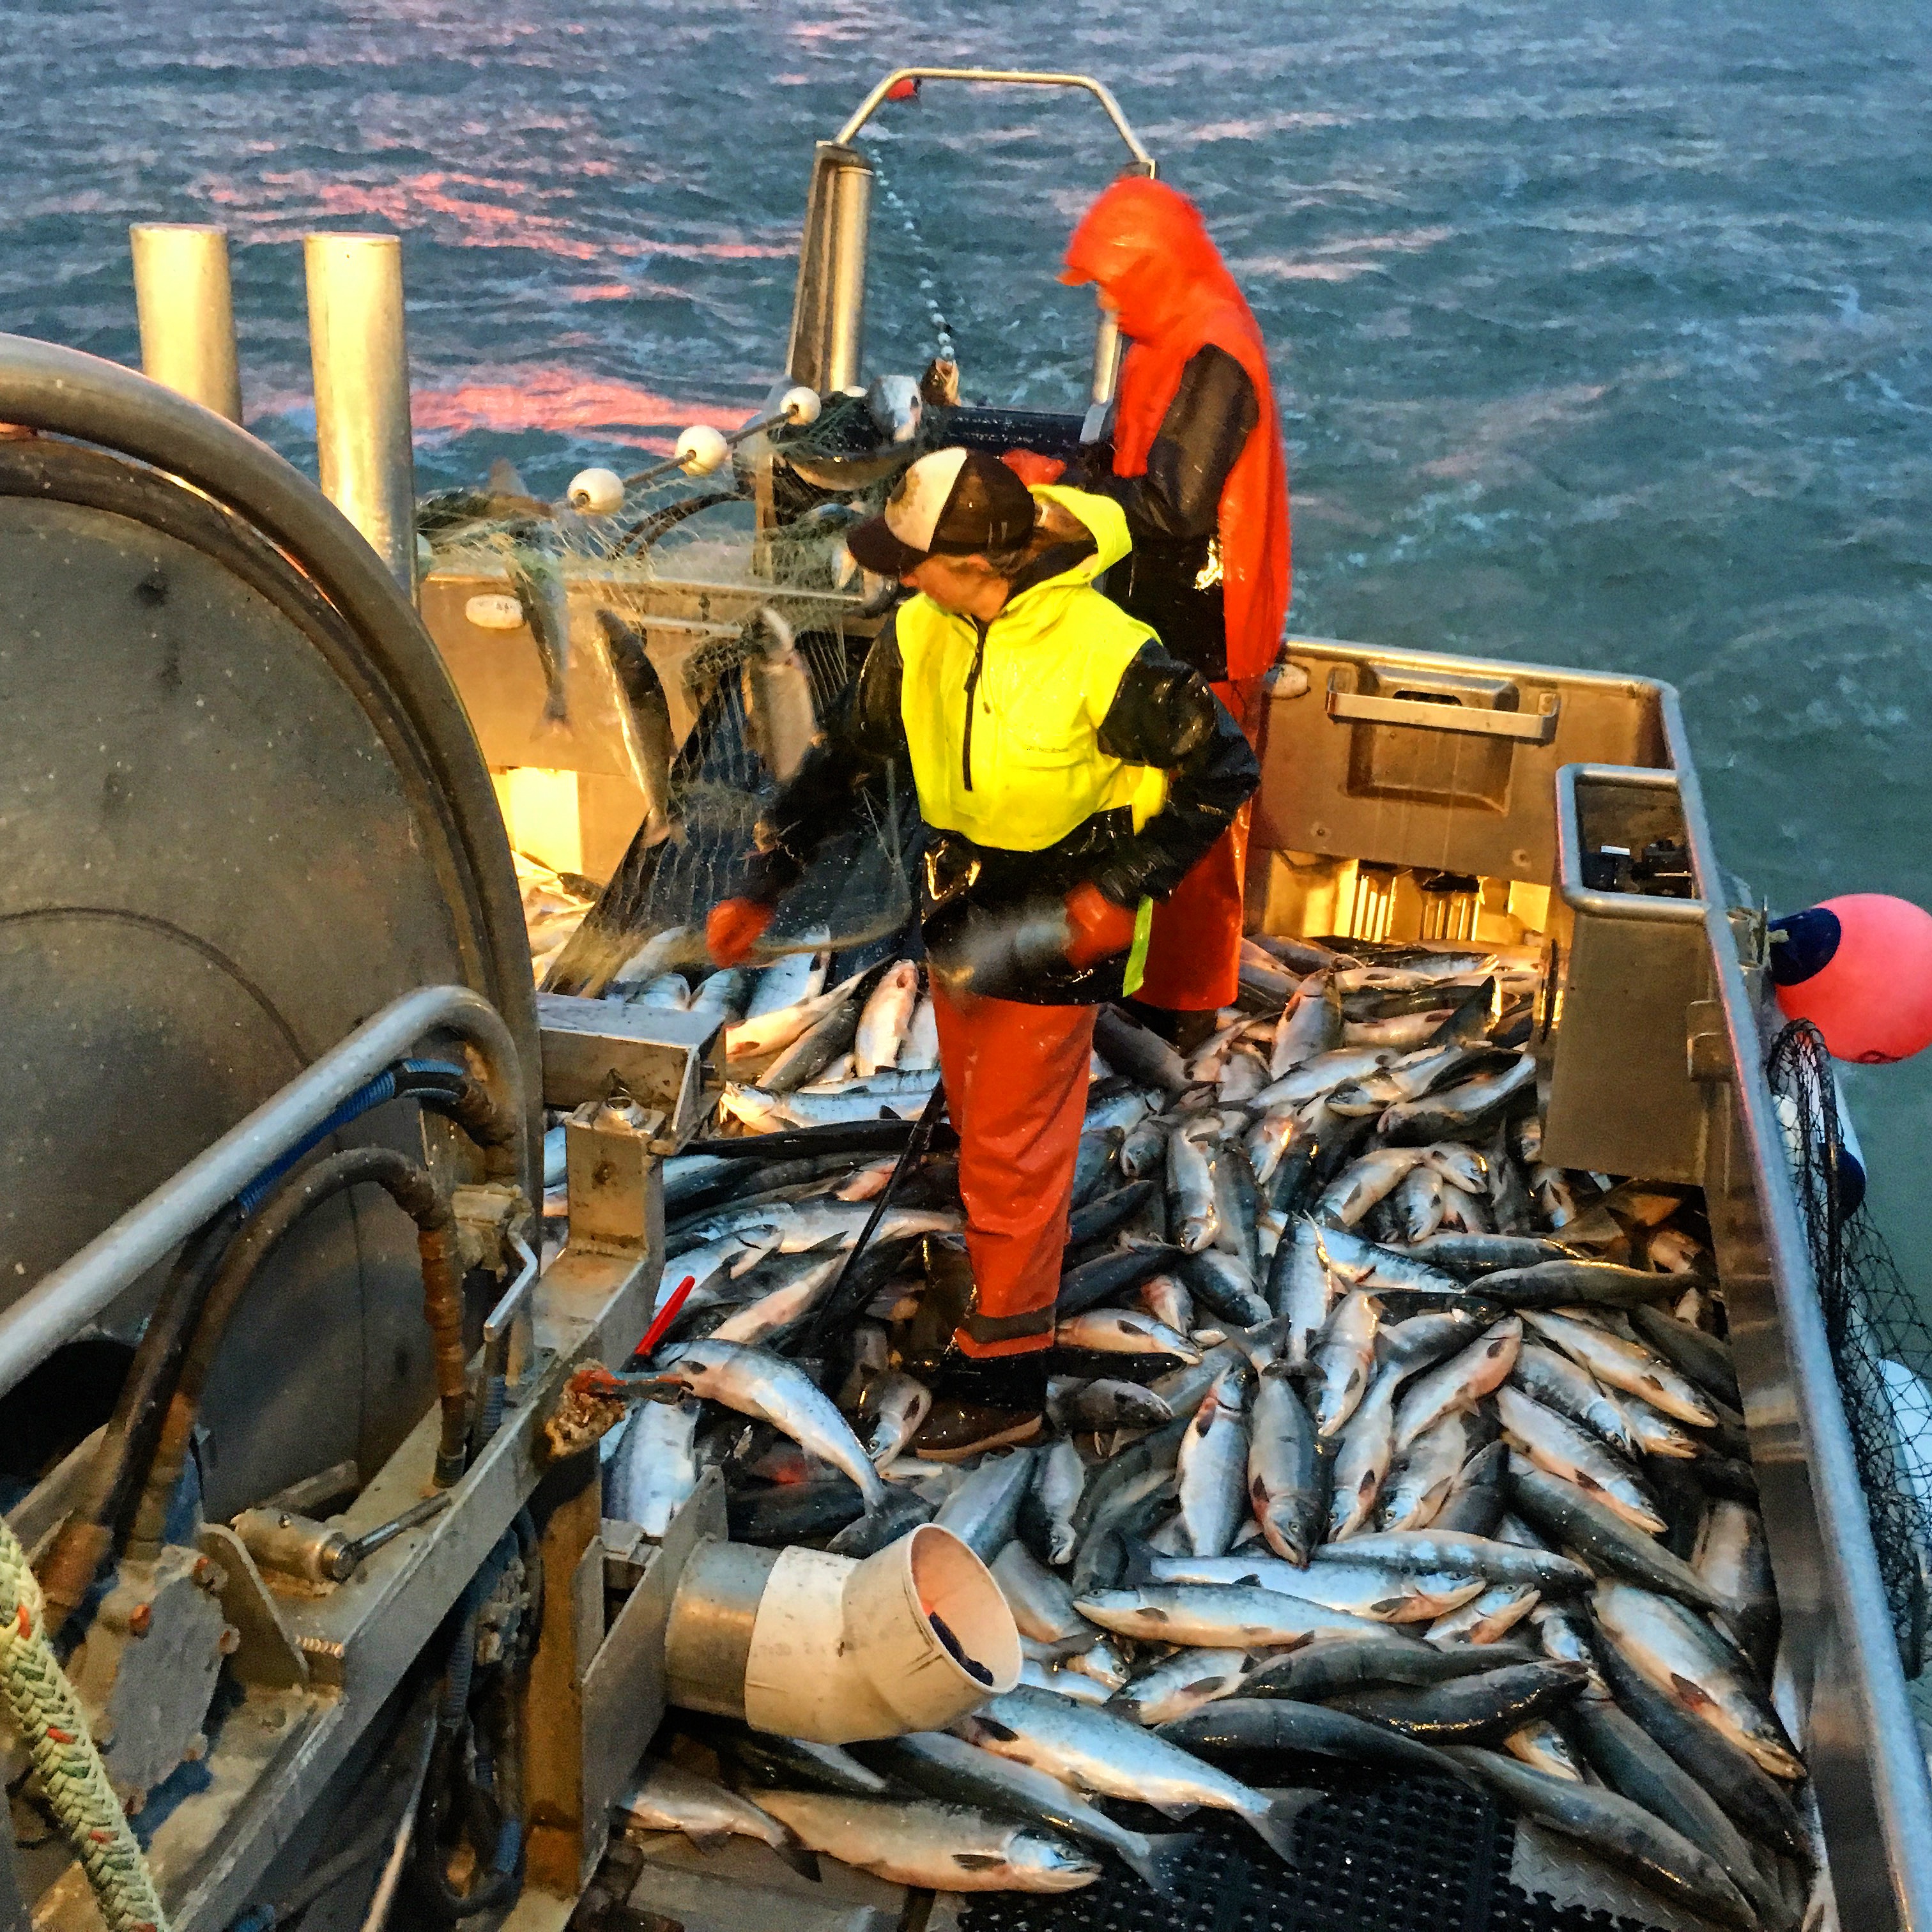 Shelly Larsen fishing in Bristol Bay, Alaska. (Photo courtesy of Shelly Larsen)